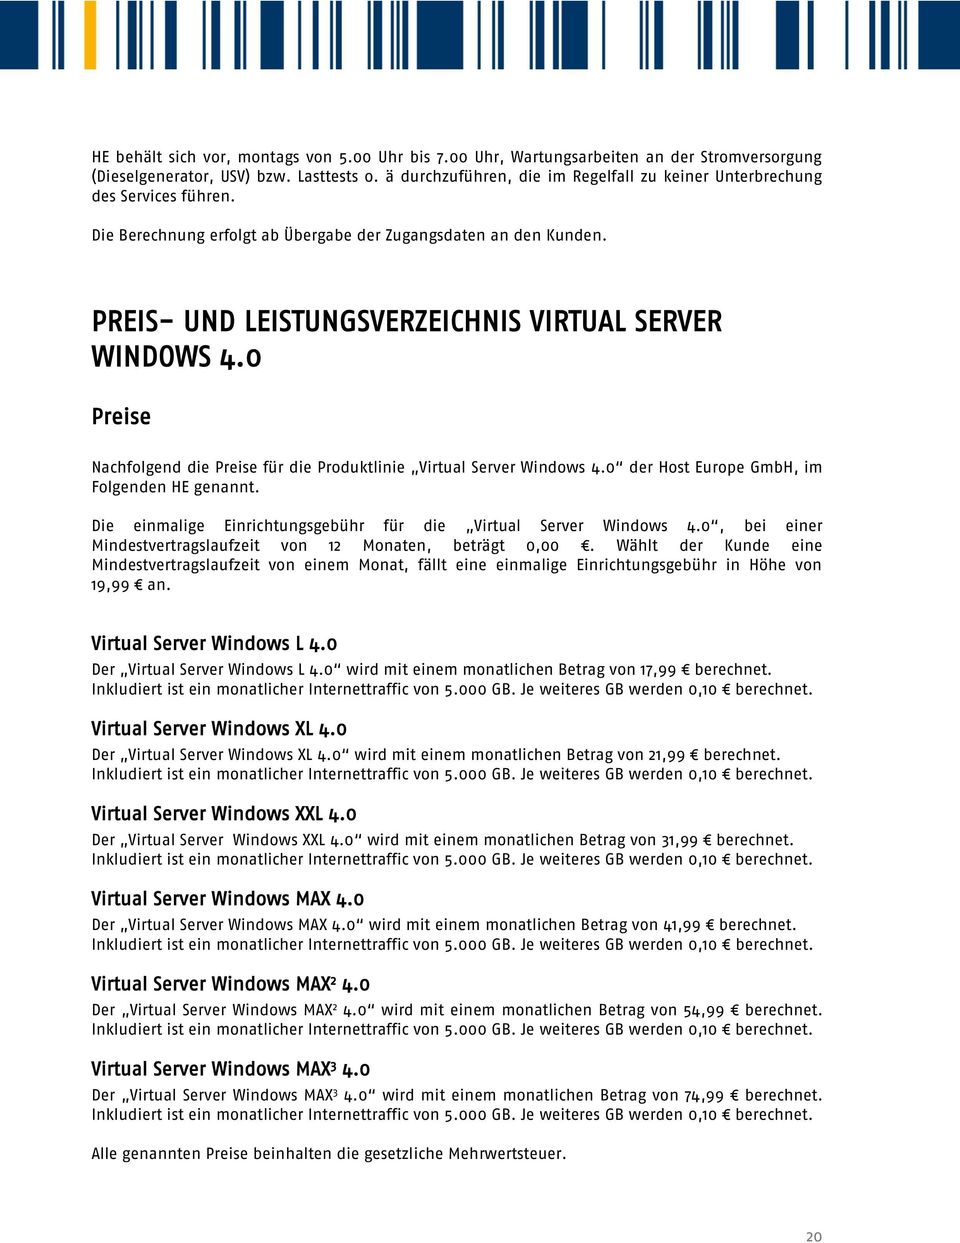 PREIS- UND LEISTUNGSVERZEICHNIS VIRTUAL SERVER WINDOWS 4.0 Preise Nachfolgend die Preise für die Produktlinie Virtual Server Windows 4.0 der Host Europe GmbH, im Folgenden HE genannt.